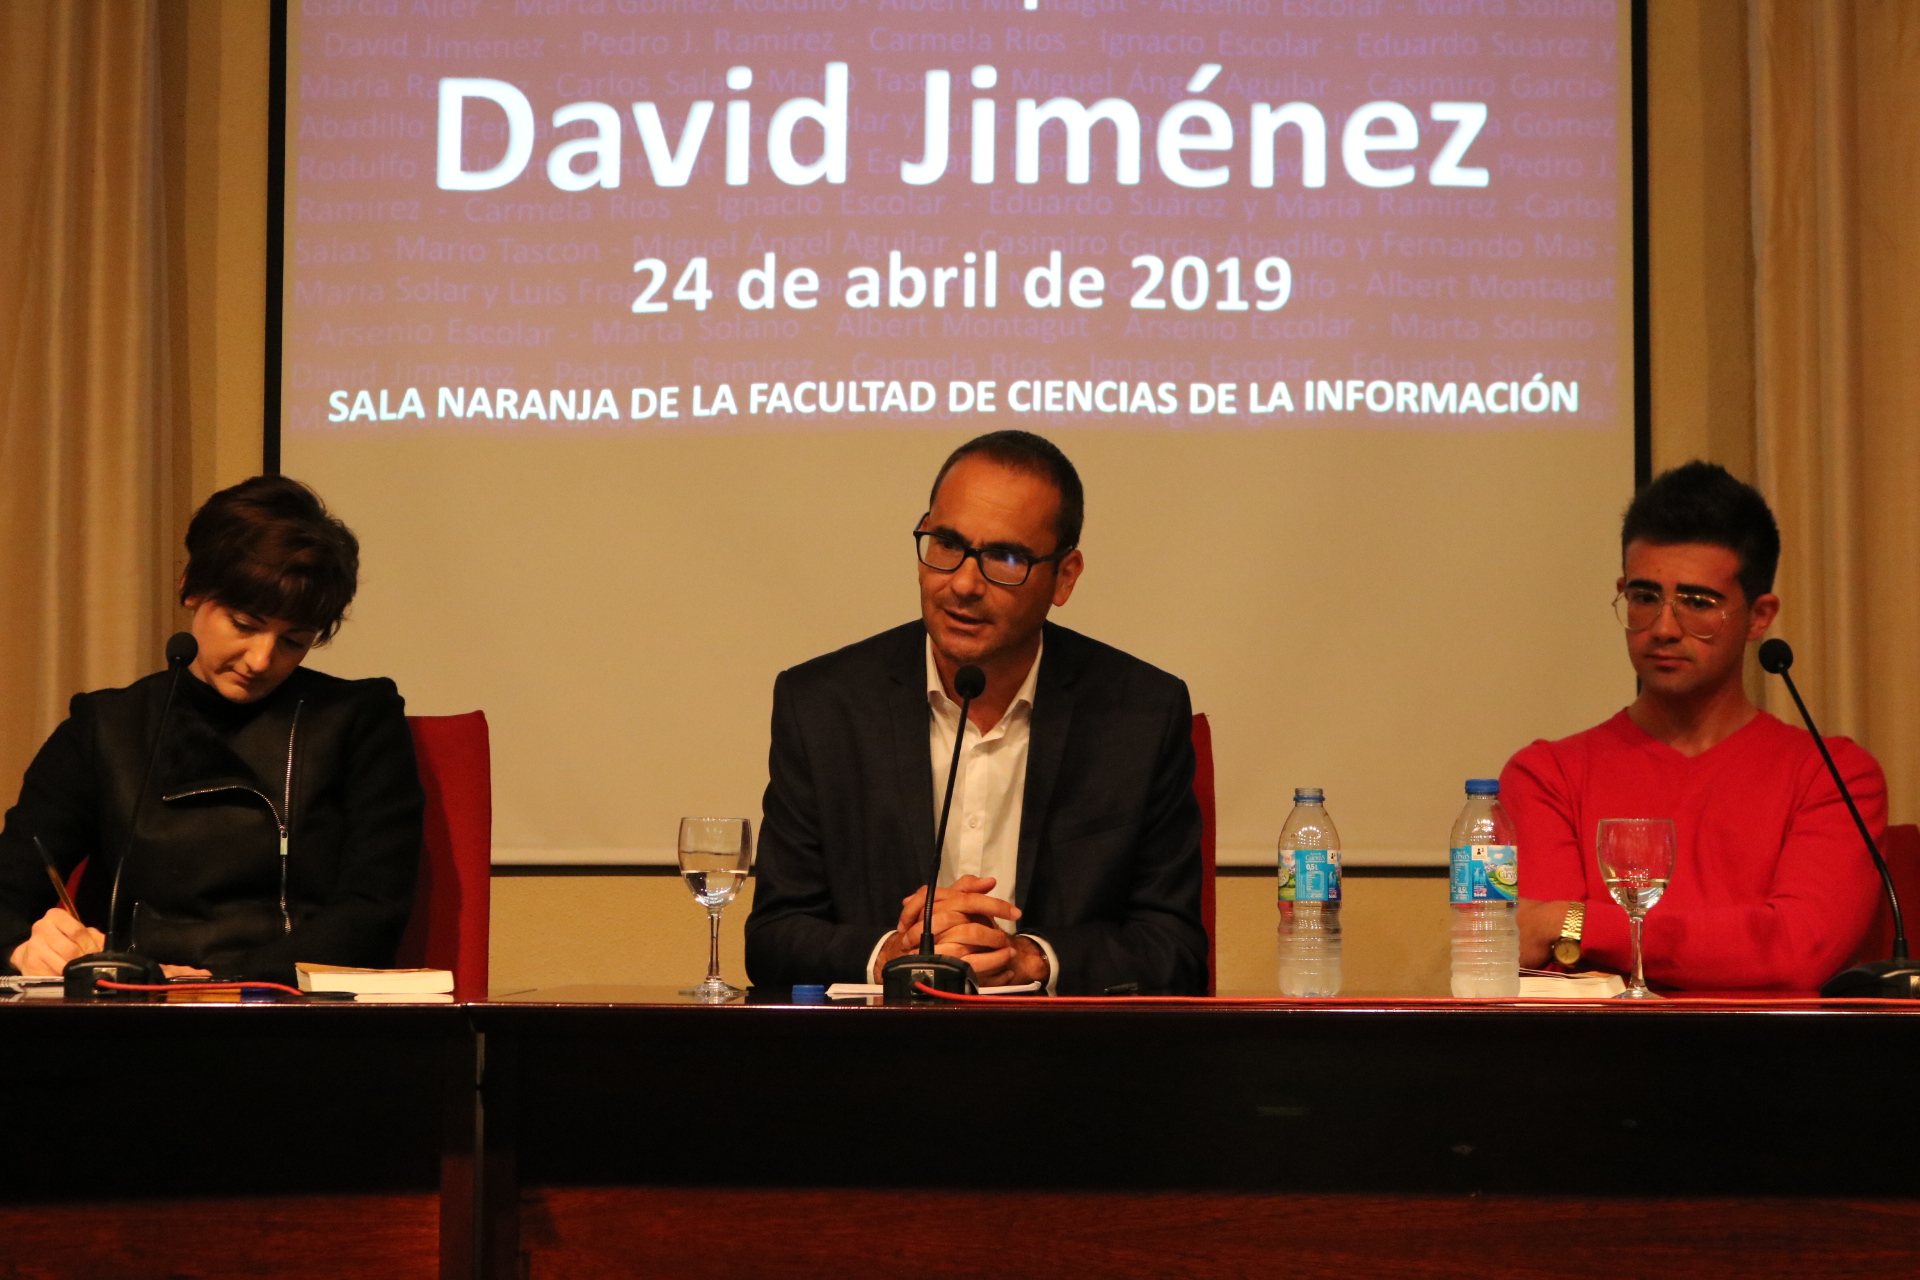 El periodista David Jiménez presenta "El Director" en la Sala Naranja